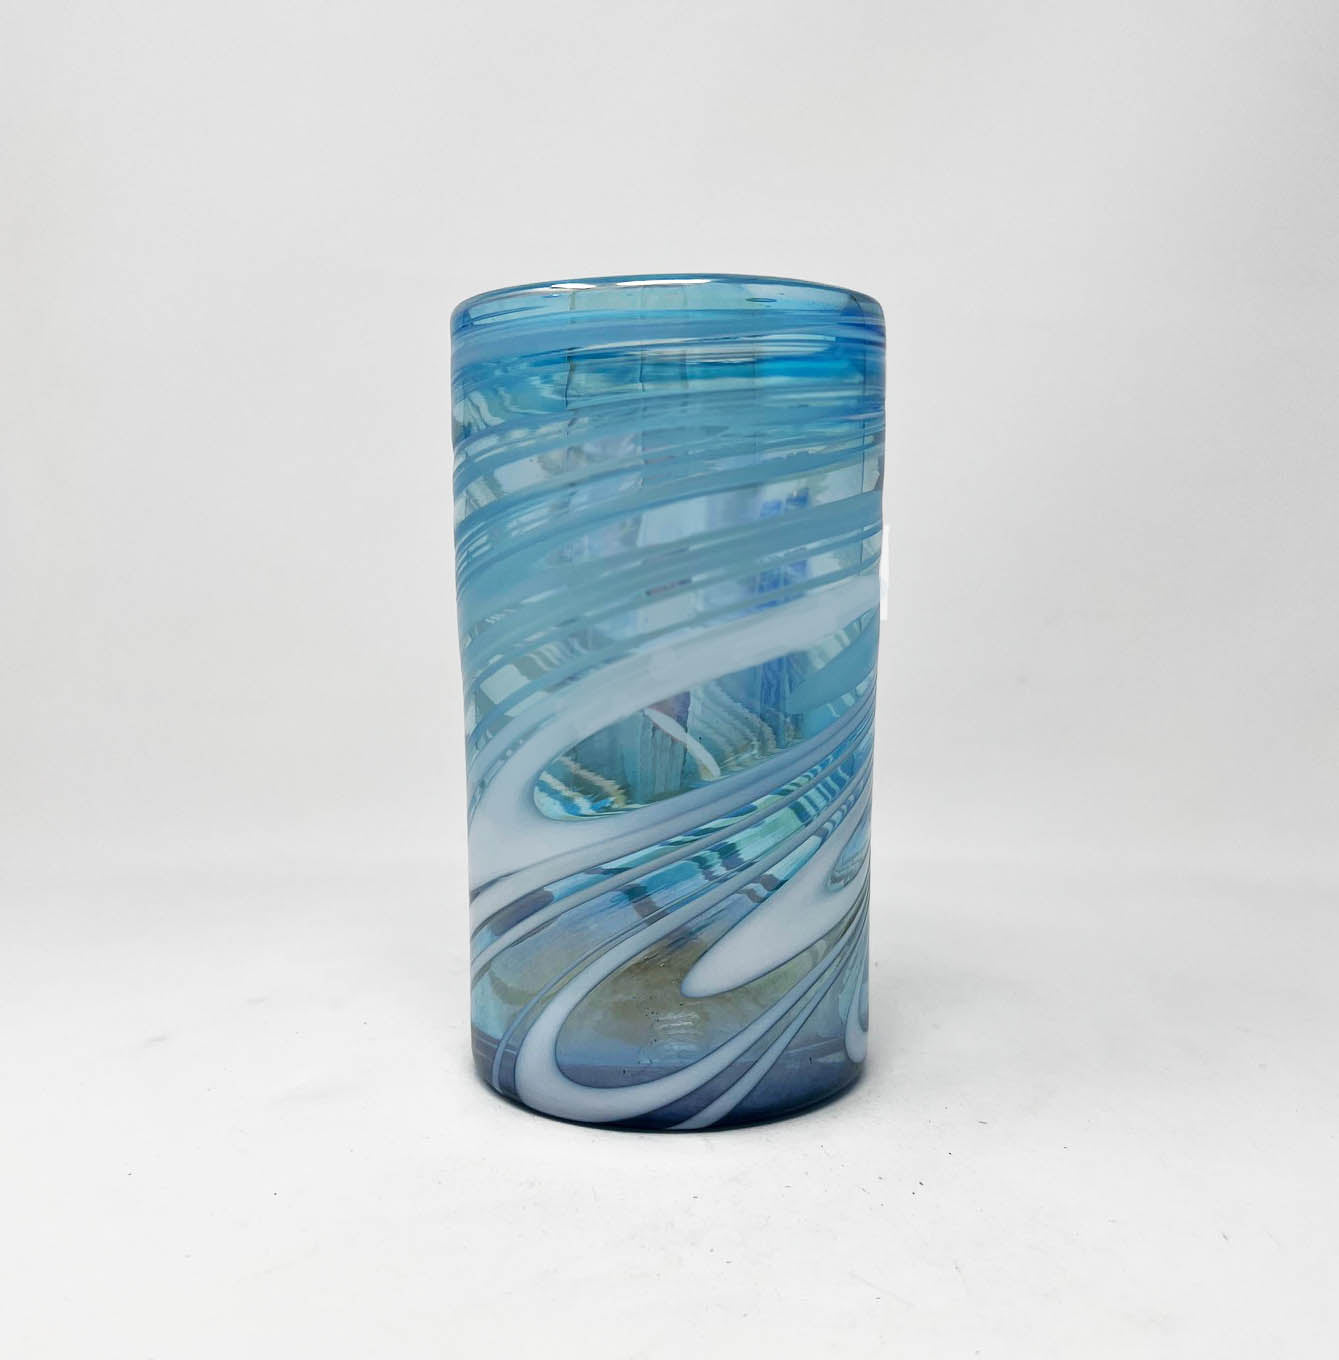 Hand Blown Water Glass - Turquoise/White Swirl Iridescent